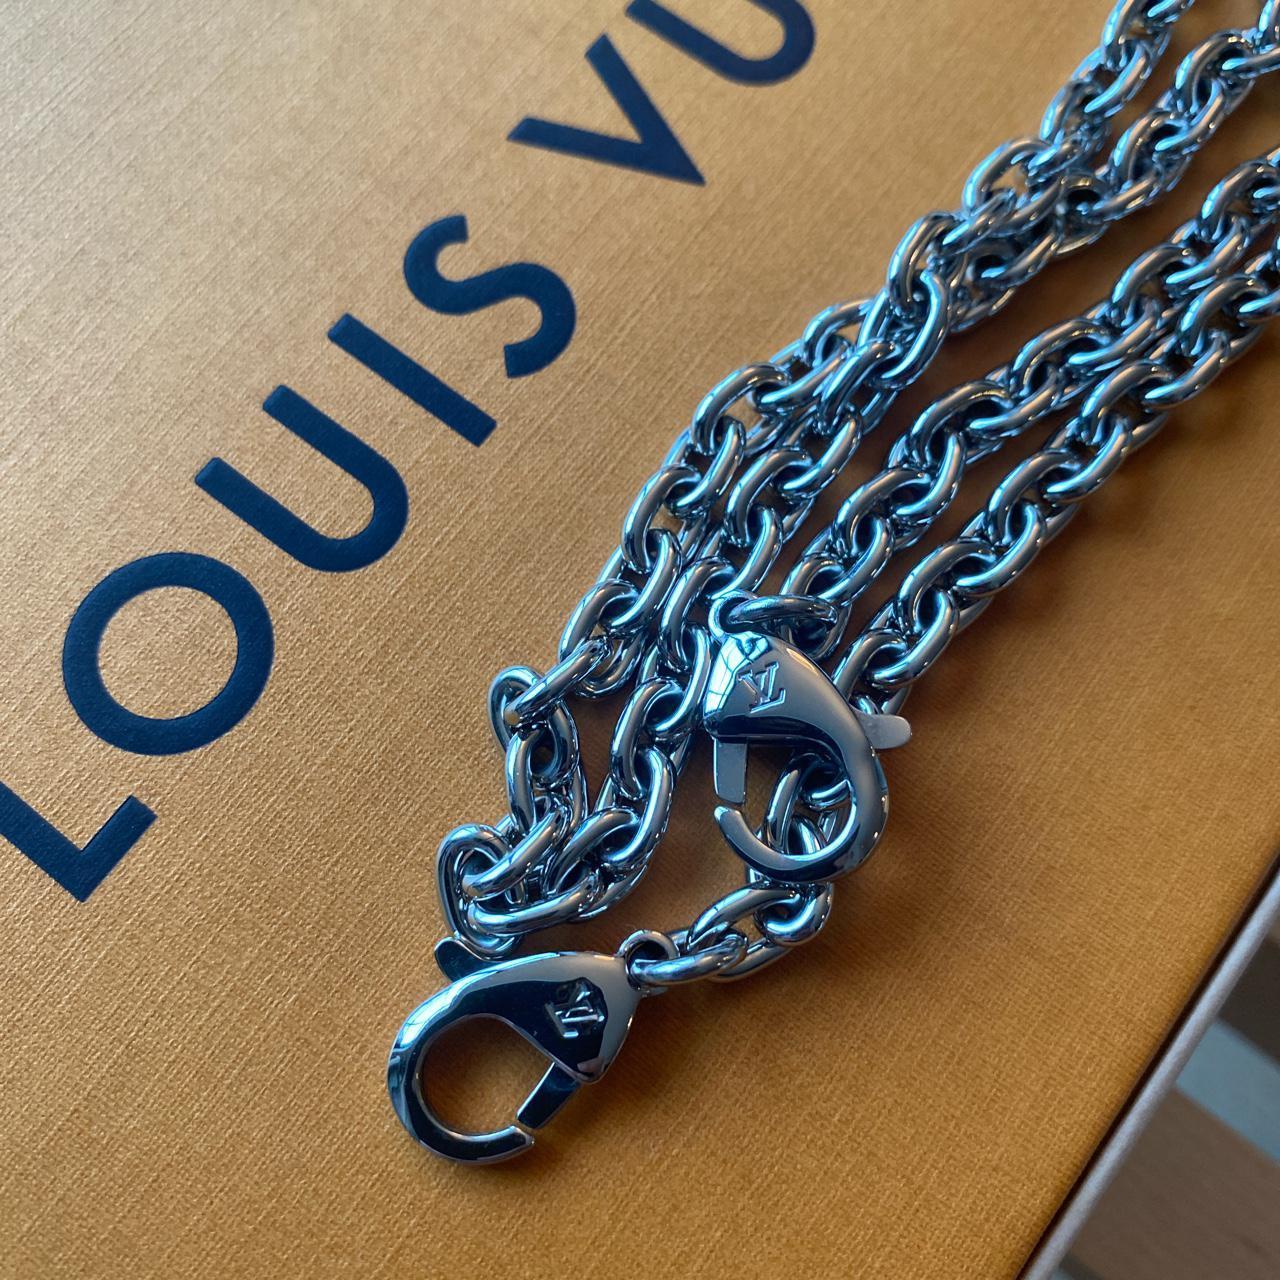 Louis Vuitton Arche vintage clutch + belt bag 💼  - Depop